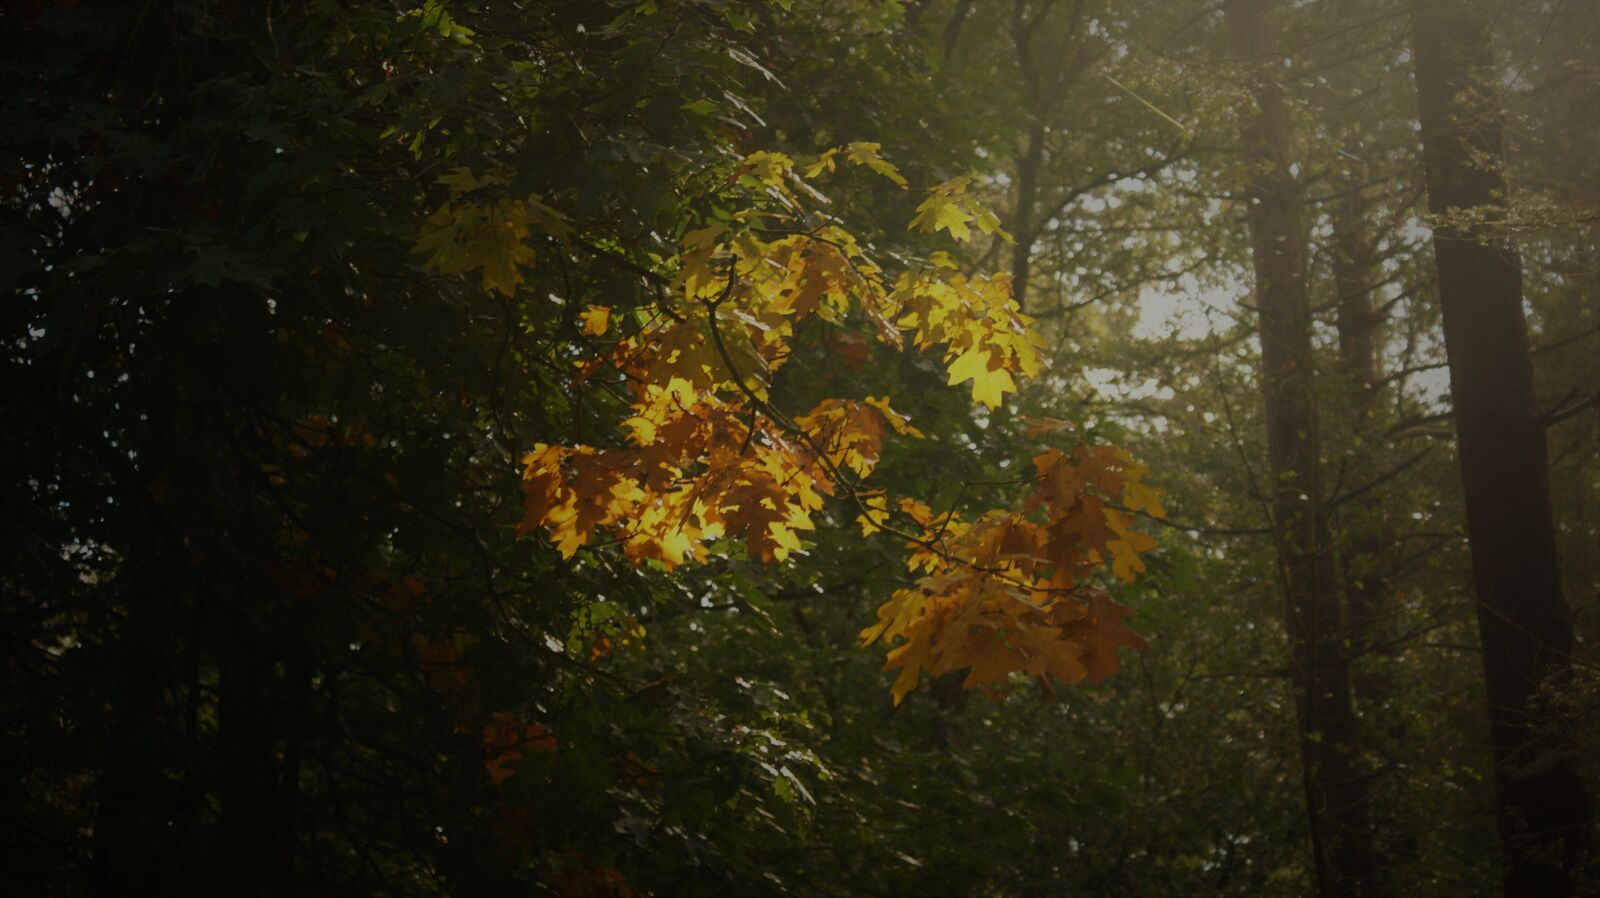 Sony Alpha DSLR-A350 sample photo. Mist, forest, autumn photography